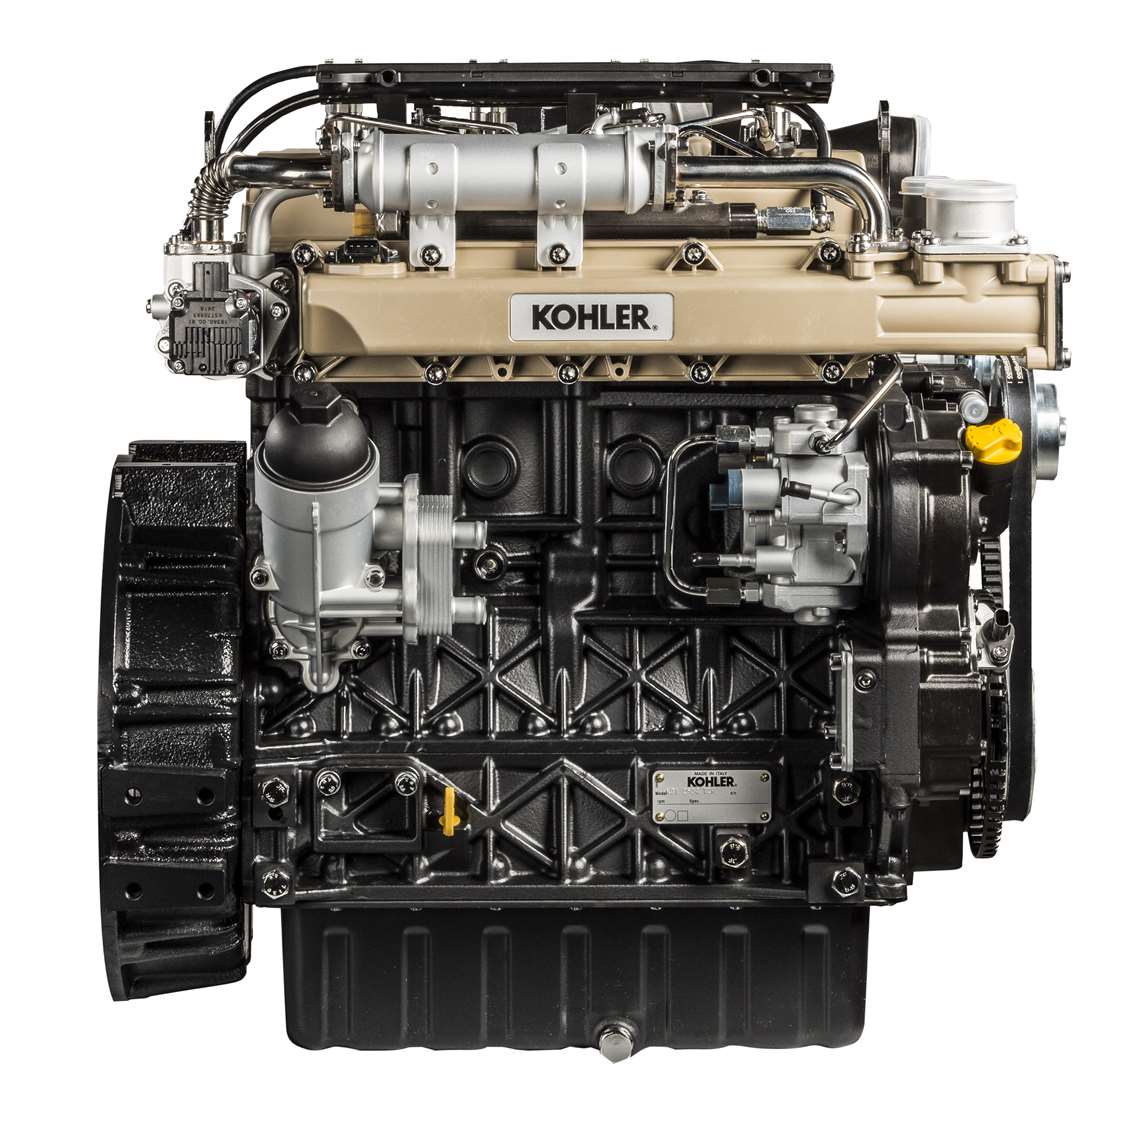 Kohler KDI 2504 Stage 5 engine